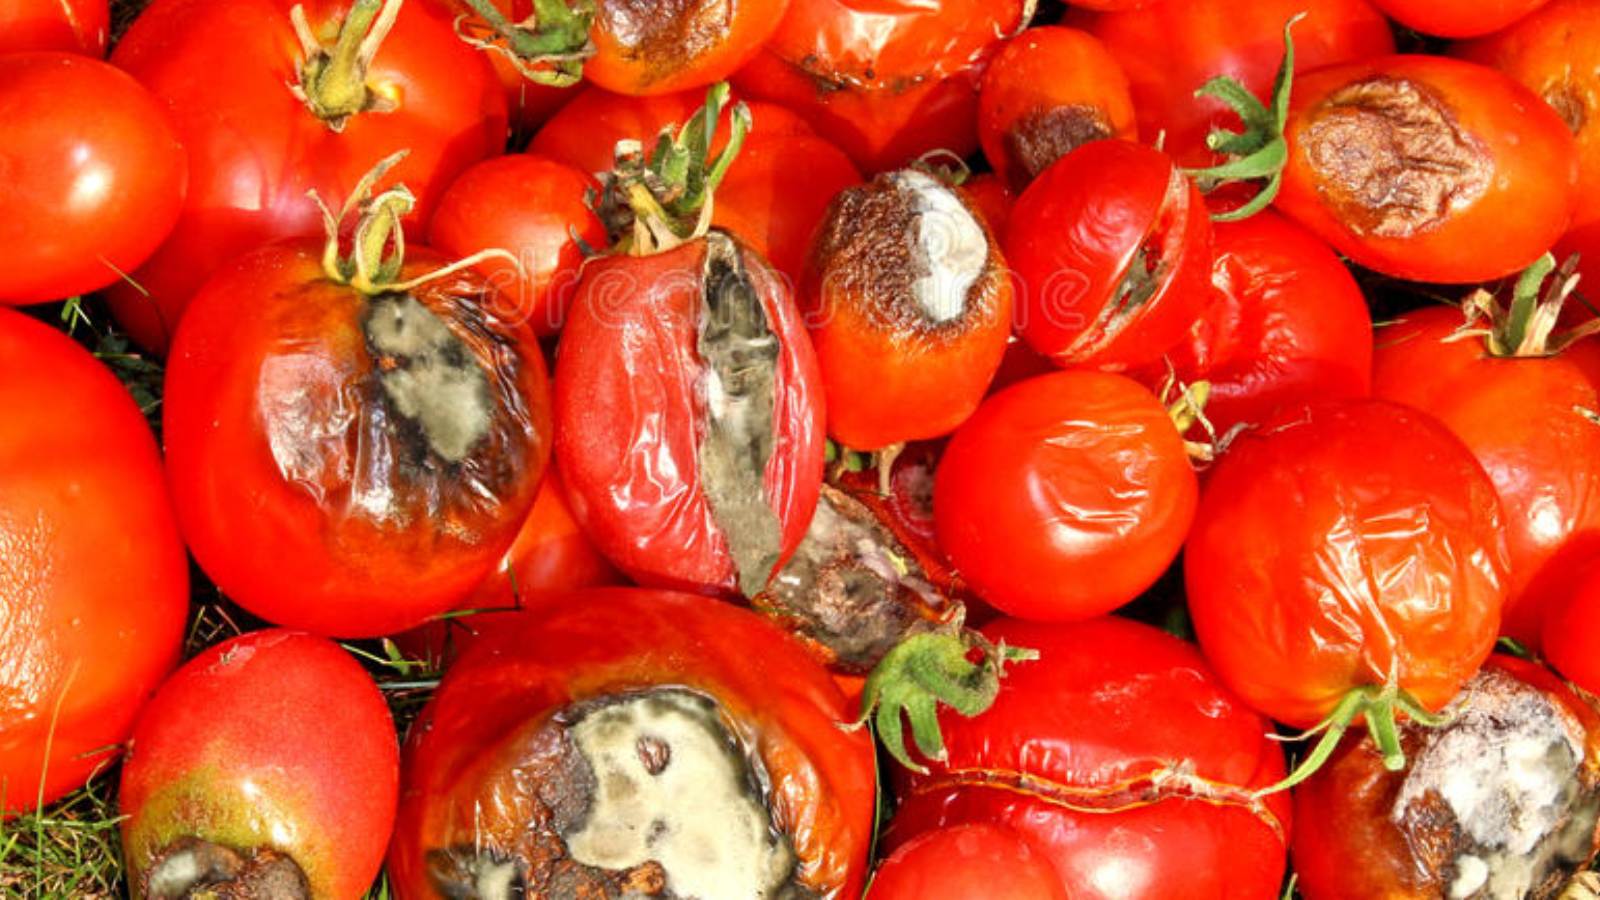 Çürük domatesleri çöpe atmadan önce düşünmelisiniz! İşte çürük domatesin hiç tahmin etmediğiniz kullanım alanları